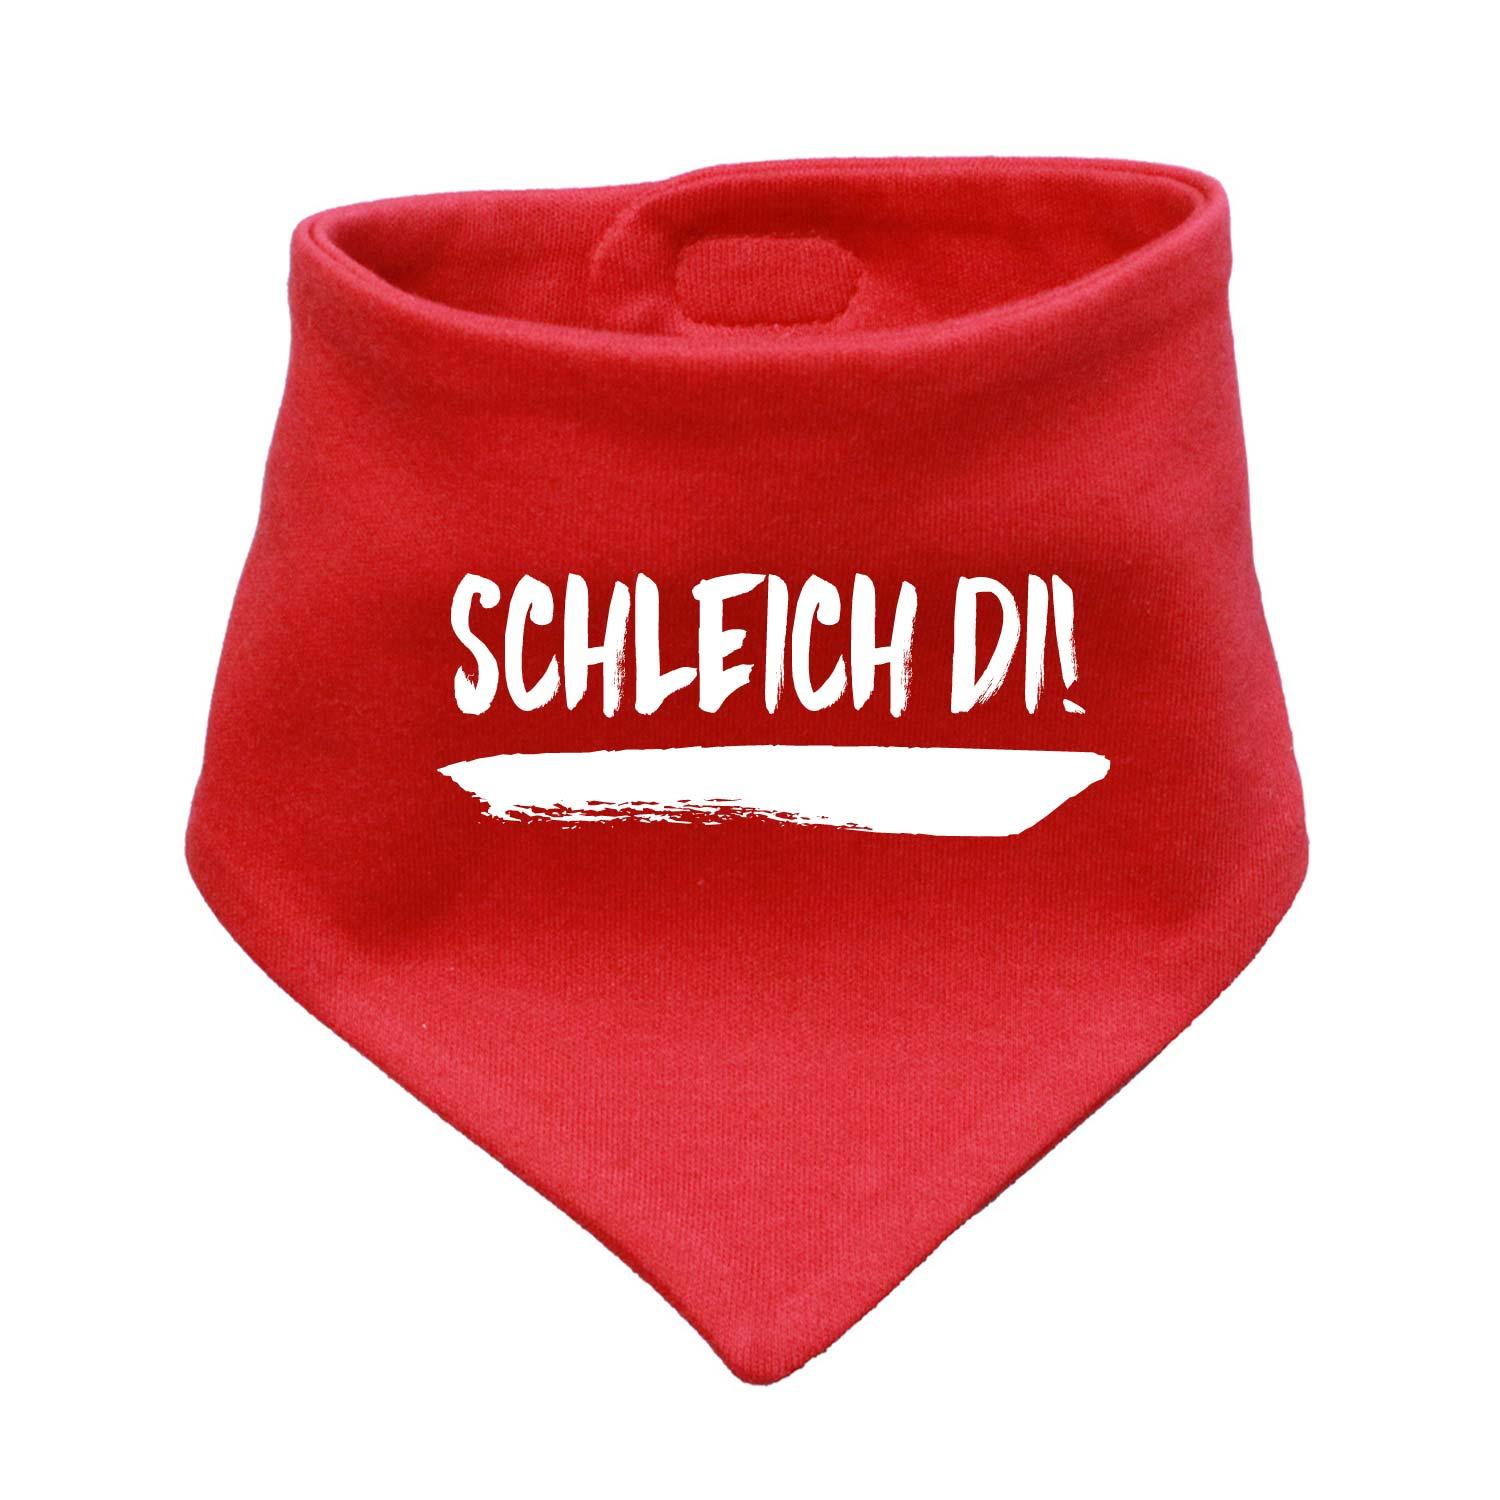 Babyhalstuch "Schleich di!" - bavariashop - mei LebensGfui